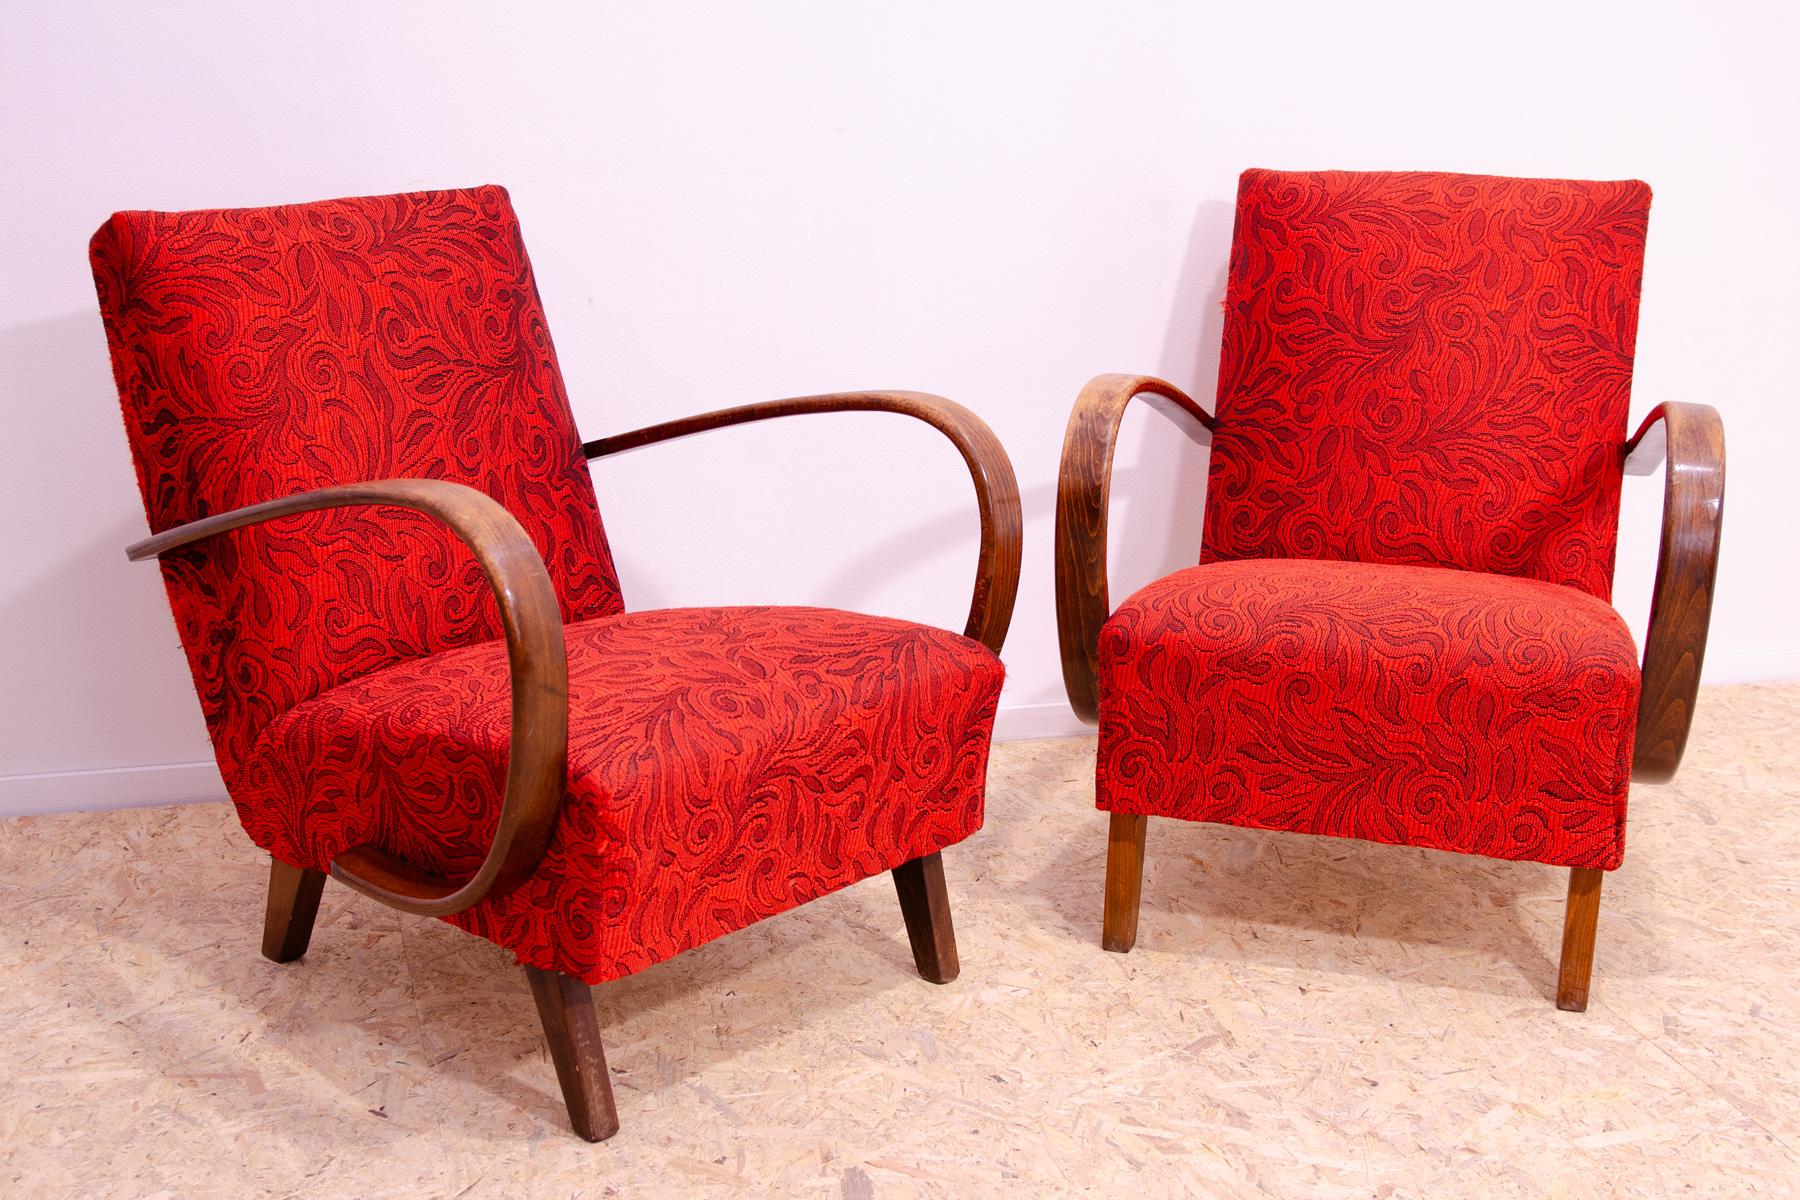 Ces fauteuils en bois courbé du milieu du siècle ont été conçus par Jindřich Halabala et fabriqués dans l'ancienne Tchécoslovaquie dans les années 1950.

Ils sont en très bon état Vintage By, présentant de légers signes d'âge et